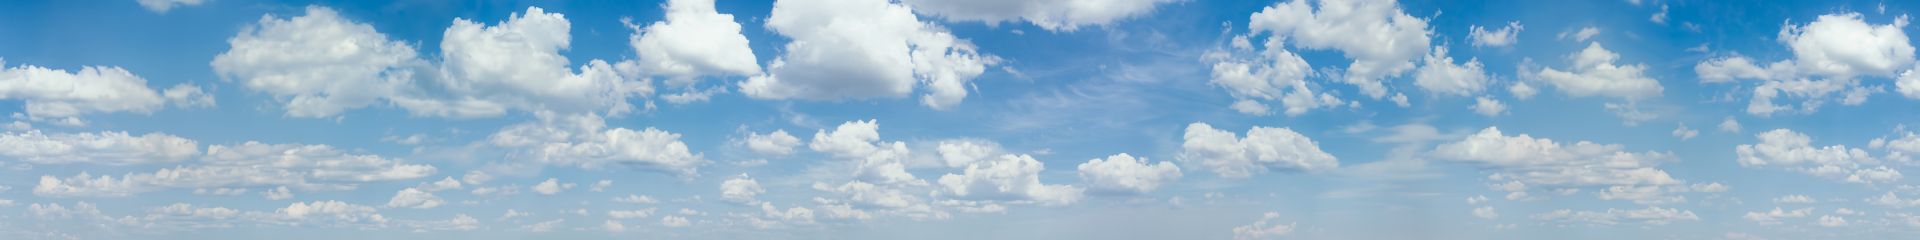 elriwa M4-H100-H - Hintergrundplatte aus PVC-Hartschaum 'Himmel mit Wolken', Höhe 100 cm, Bild H